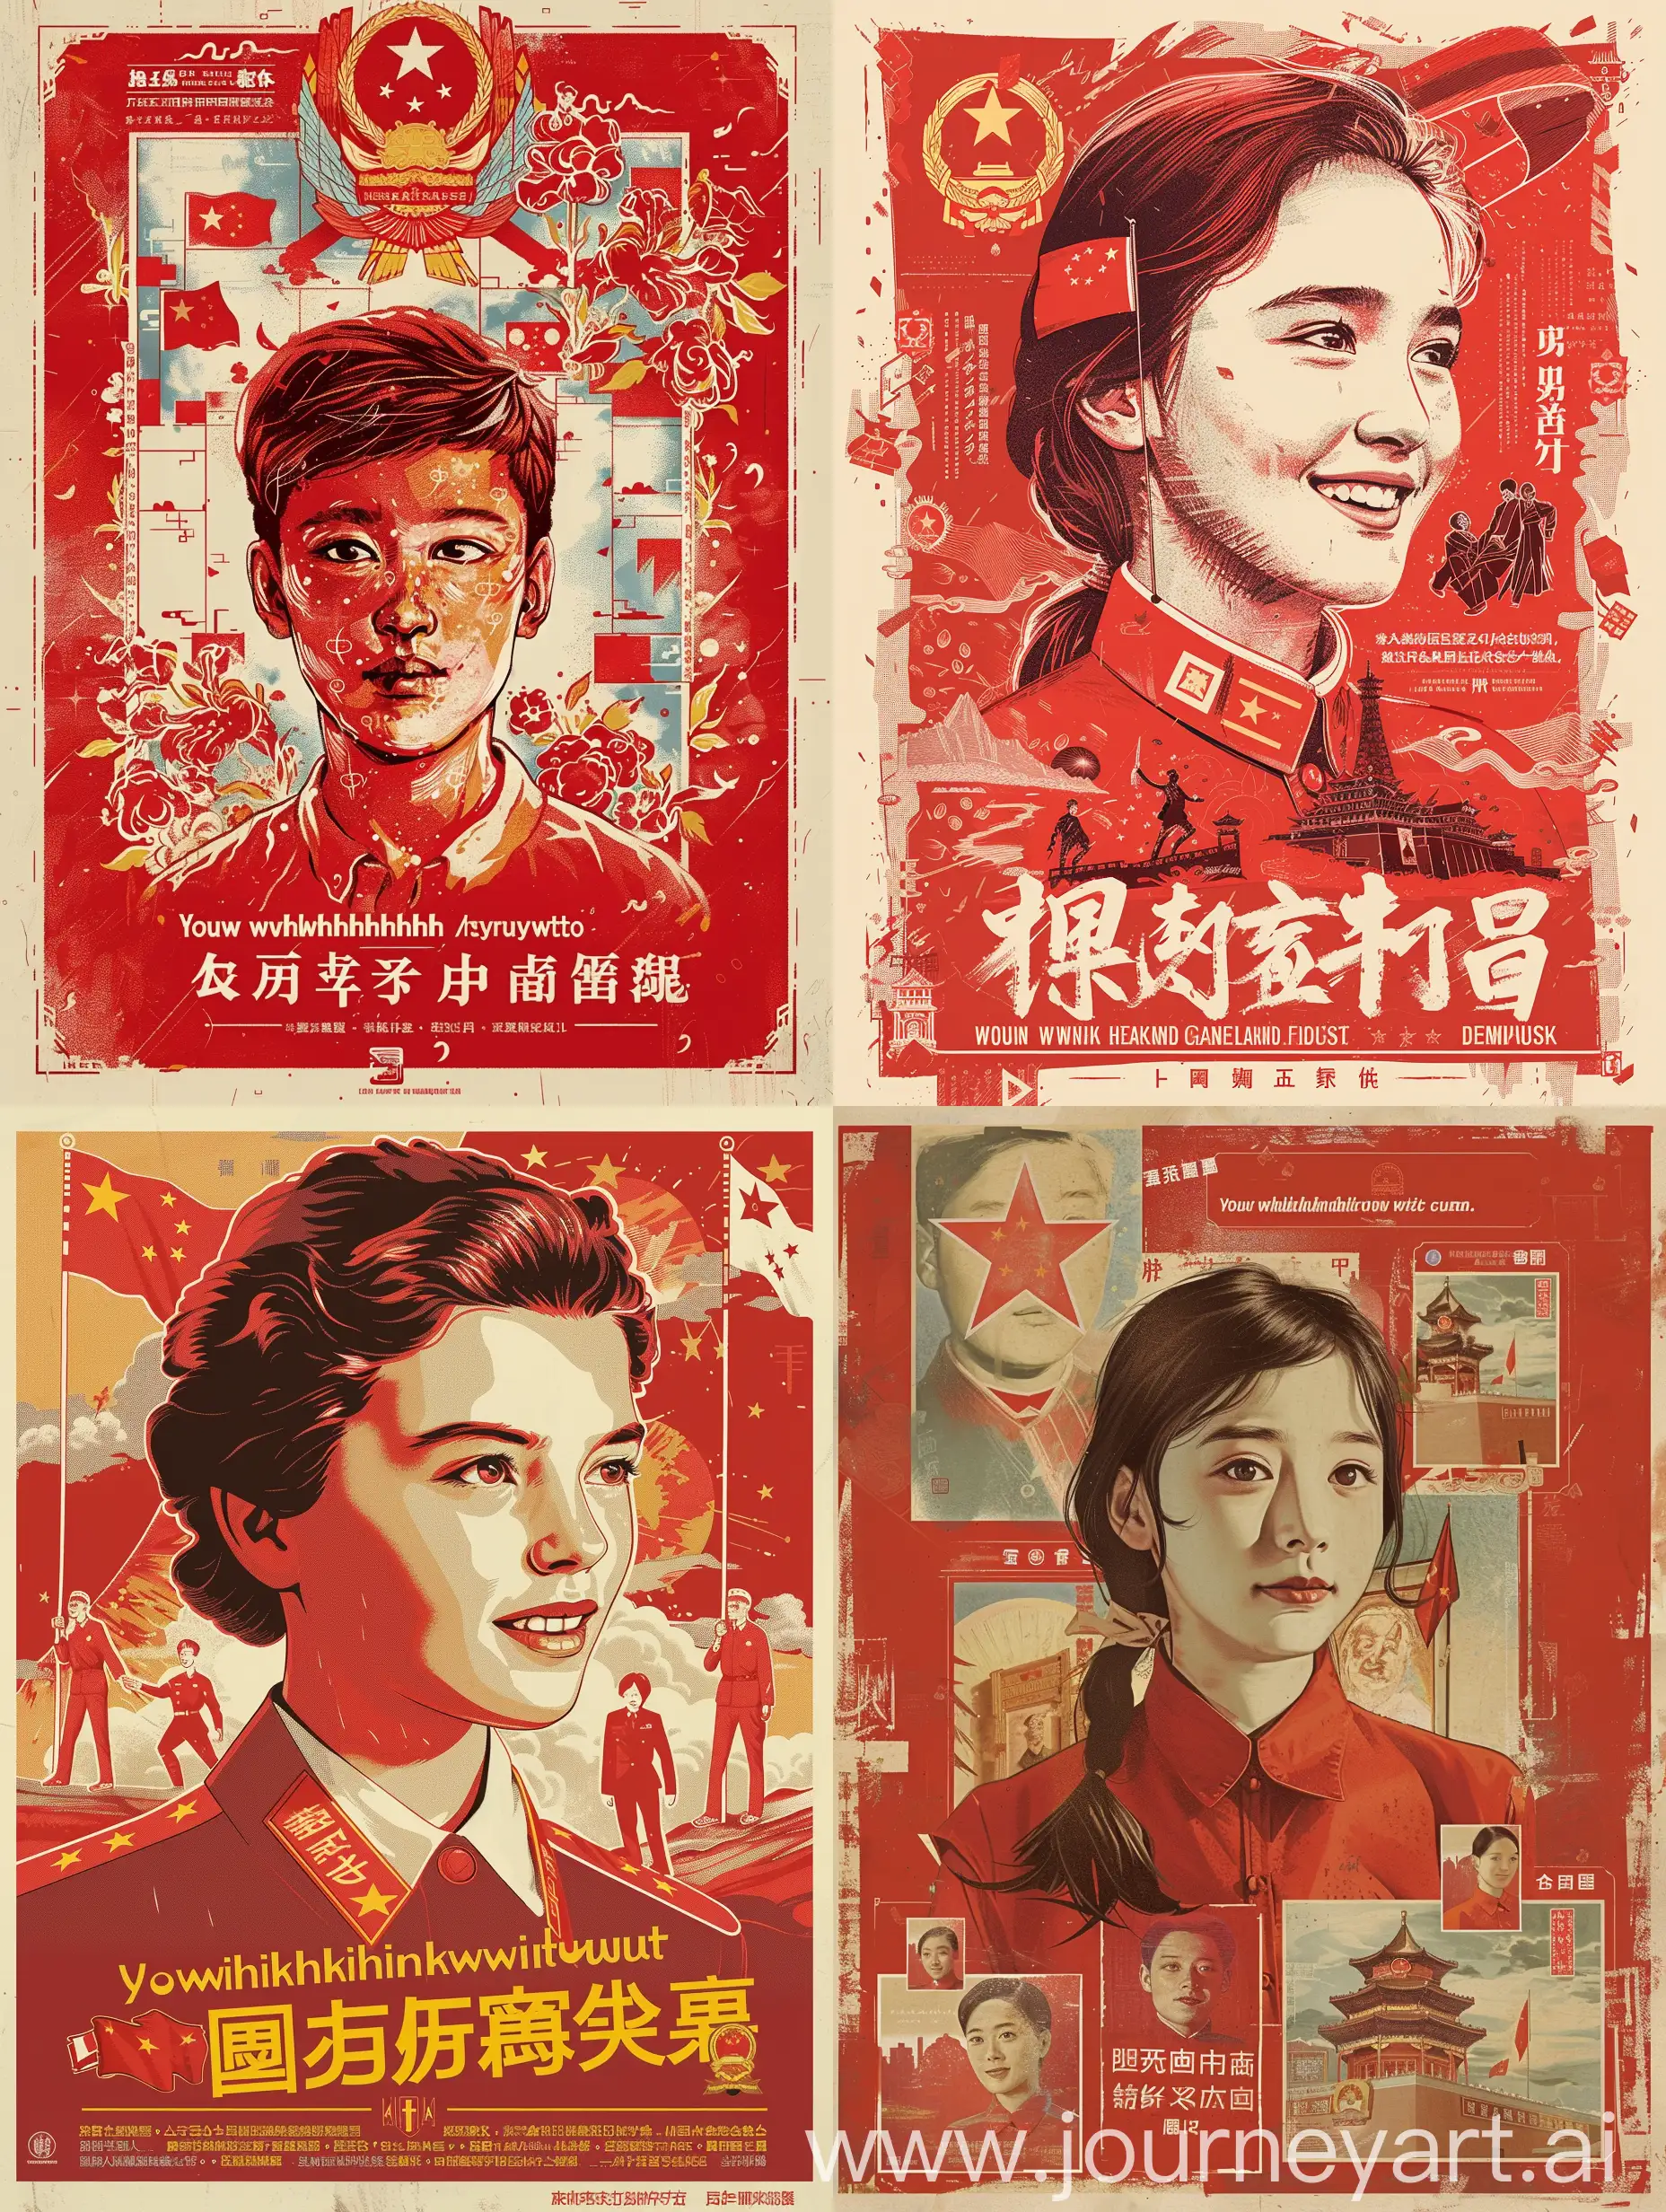 设计元素：使用鲜明的红色调和象征性的图标，如国旗、党徽、青年肖像等。
图像与文字：结合青年代表的肖像和激励性的文字，如“青春与国同行”，“以梦为马，不负韶华”等。
故事性：通过系列海报讲述一个青年如何通过自己的努力和信念，为中国式现代化作出贡献的故事。